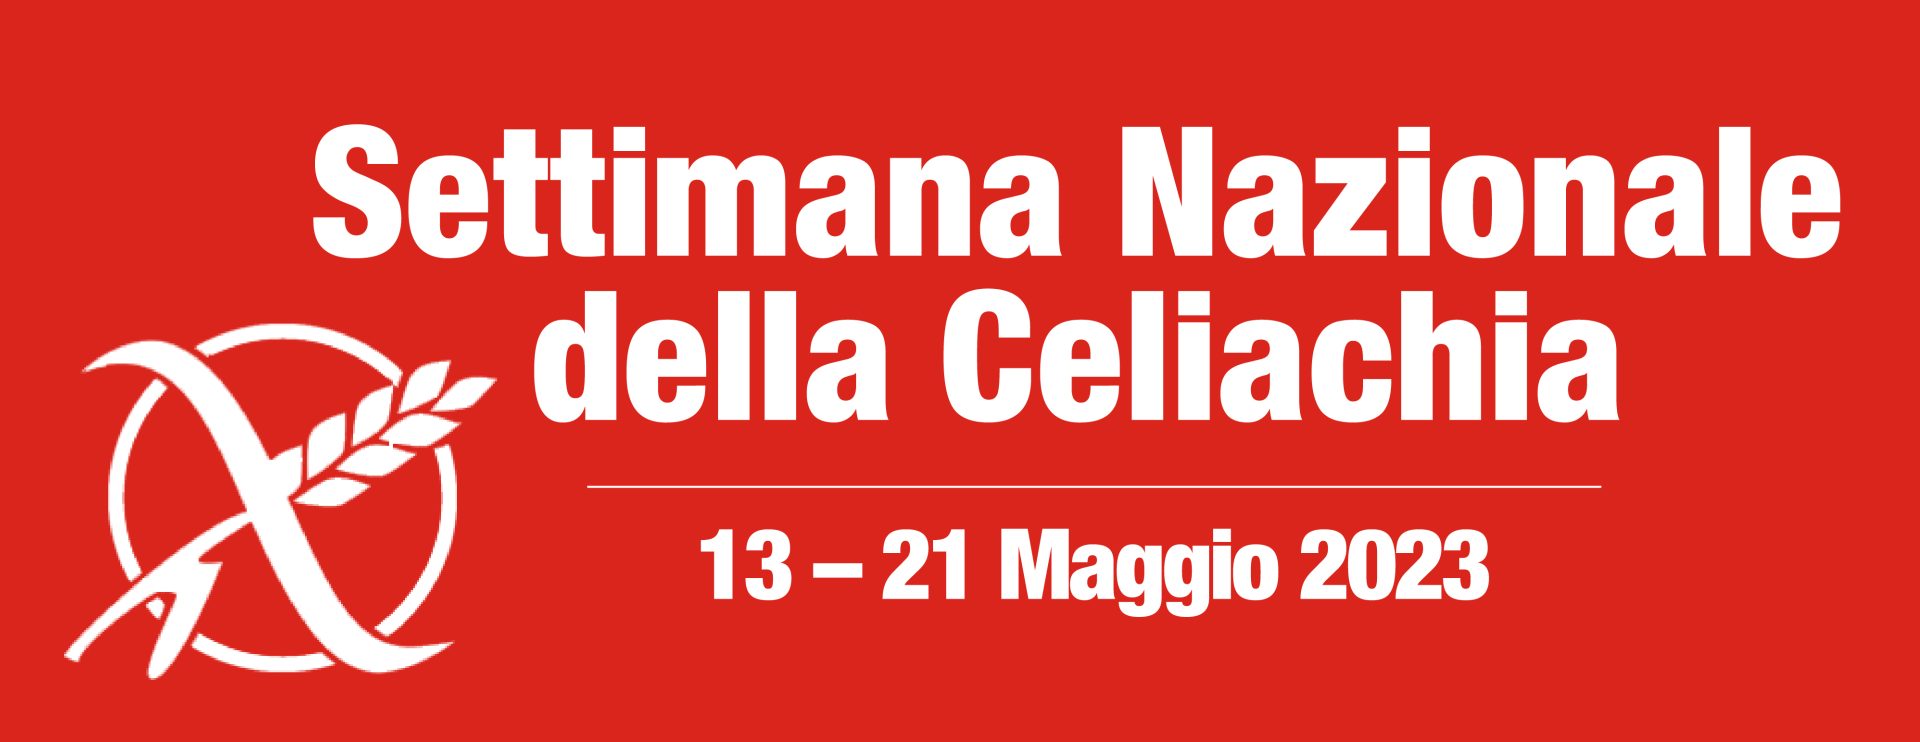 Logo Settimana Nazionale della Celiachia 2023 - Rosso - RGB